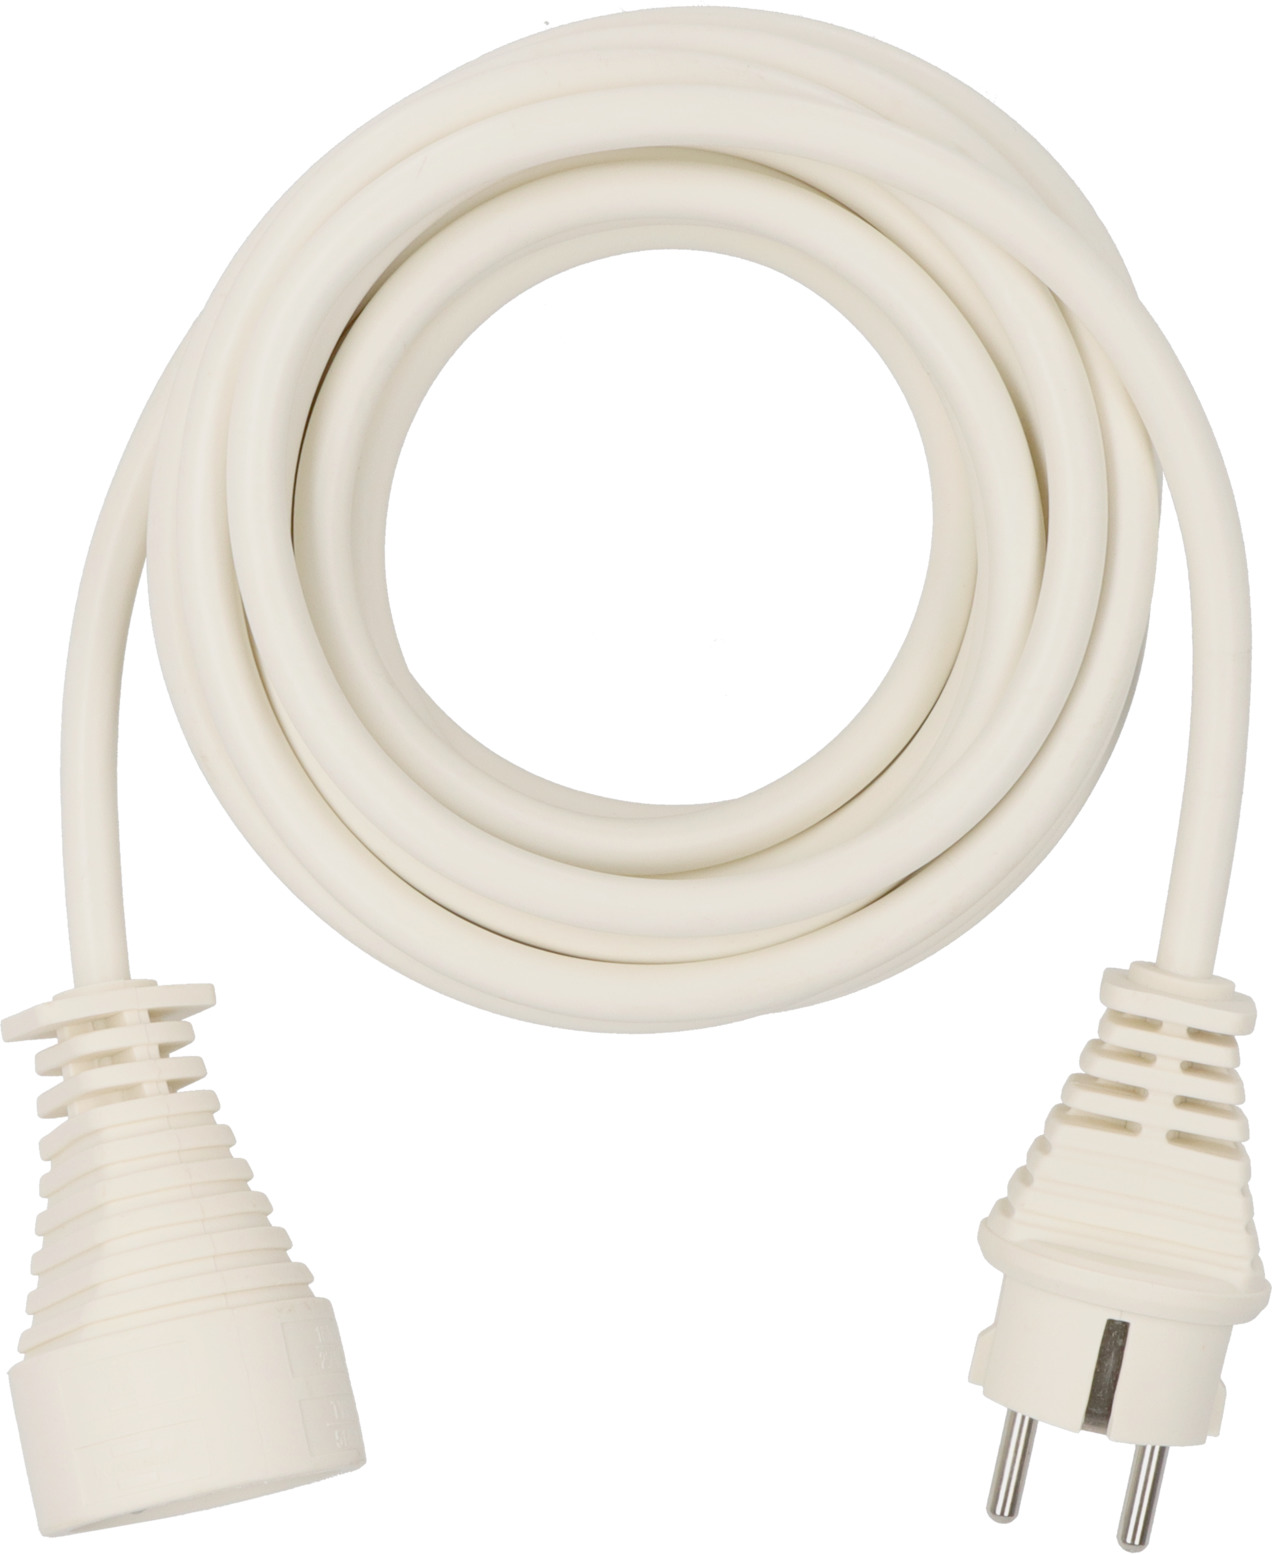 Rallonge électrique 5m H05VV-F 3G1,5 blanc